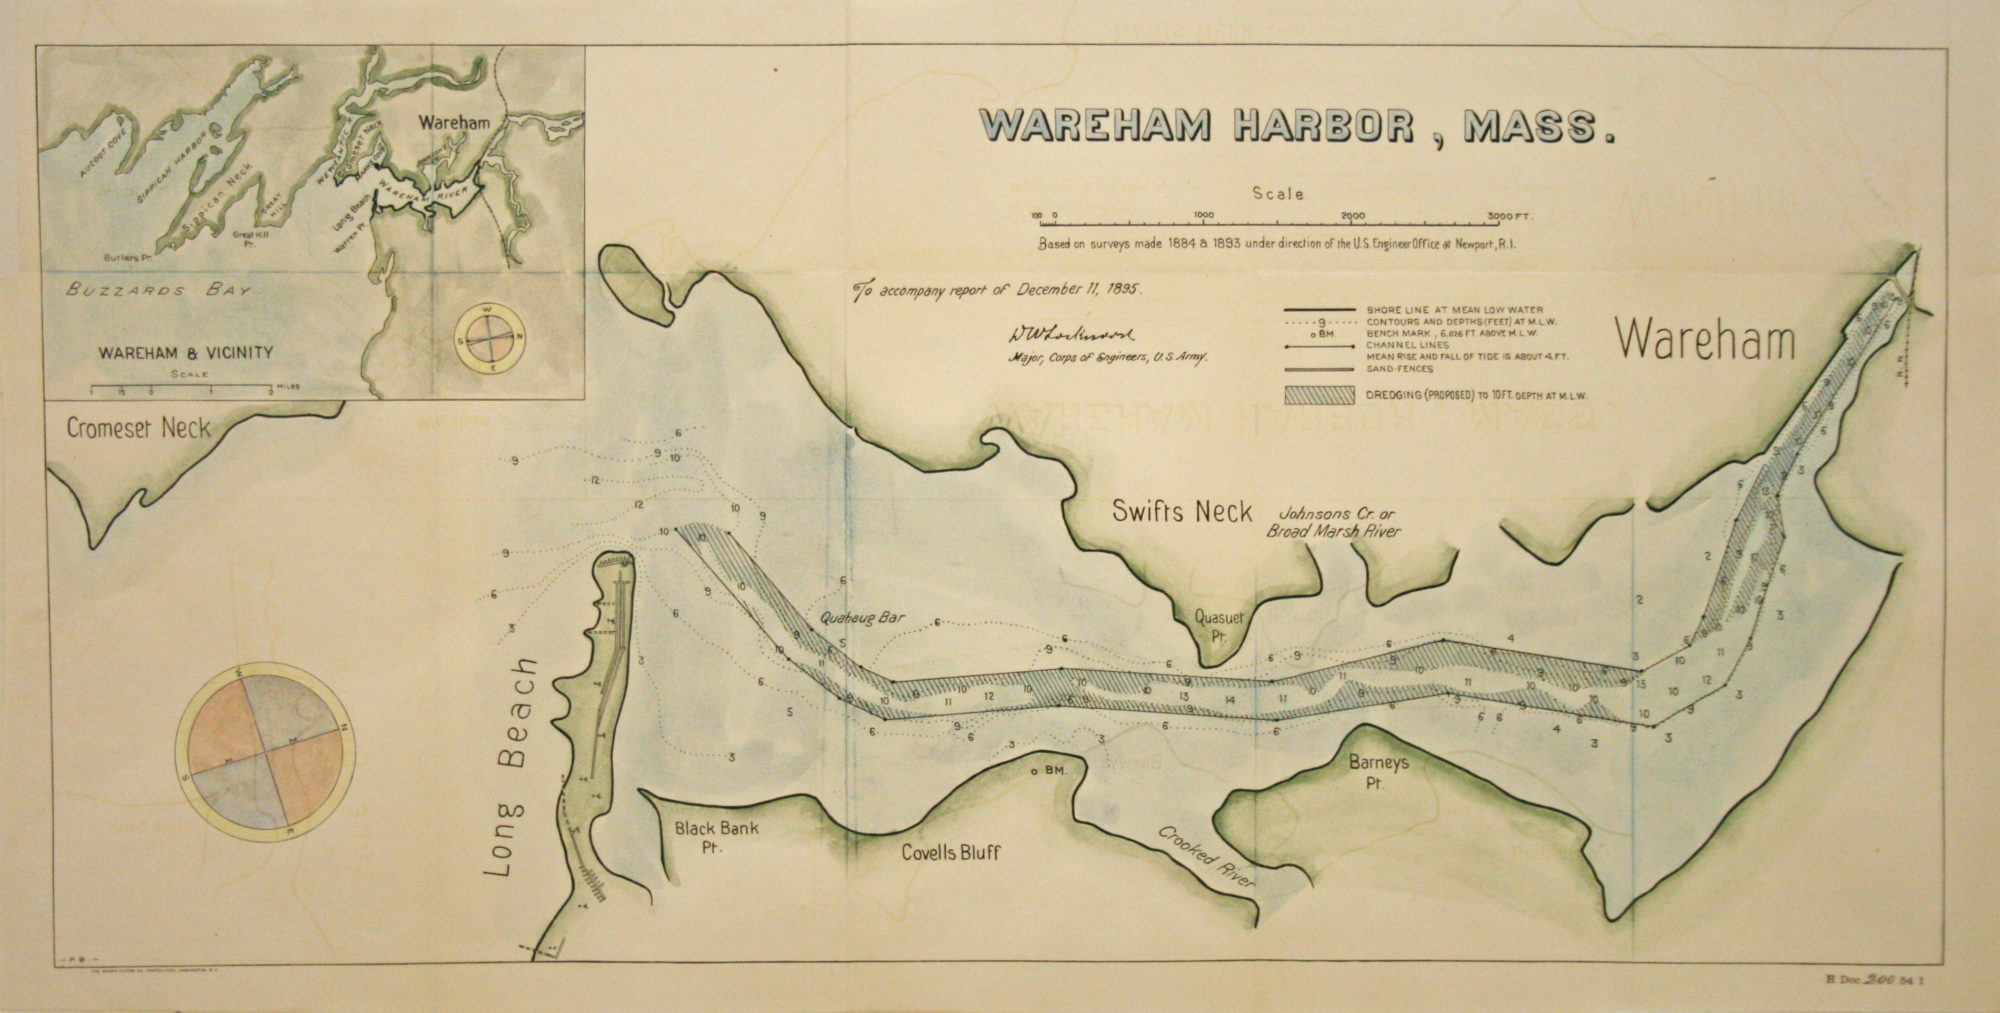 Wareham Harbor, Mass. 1895